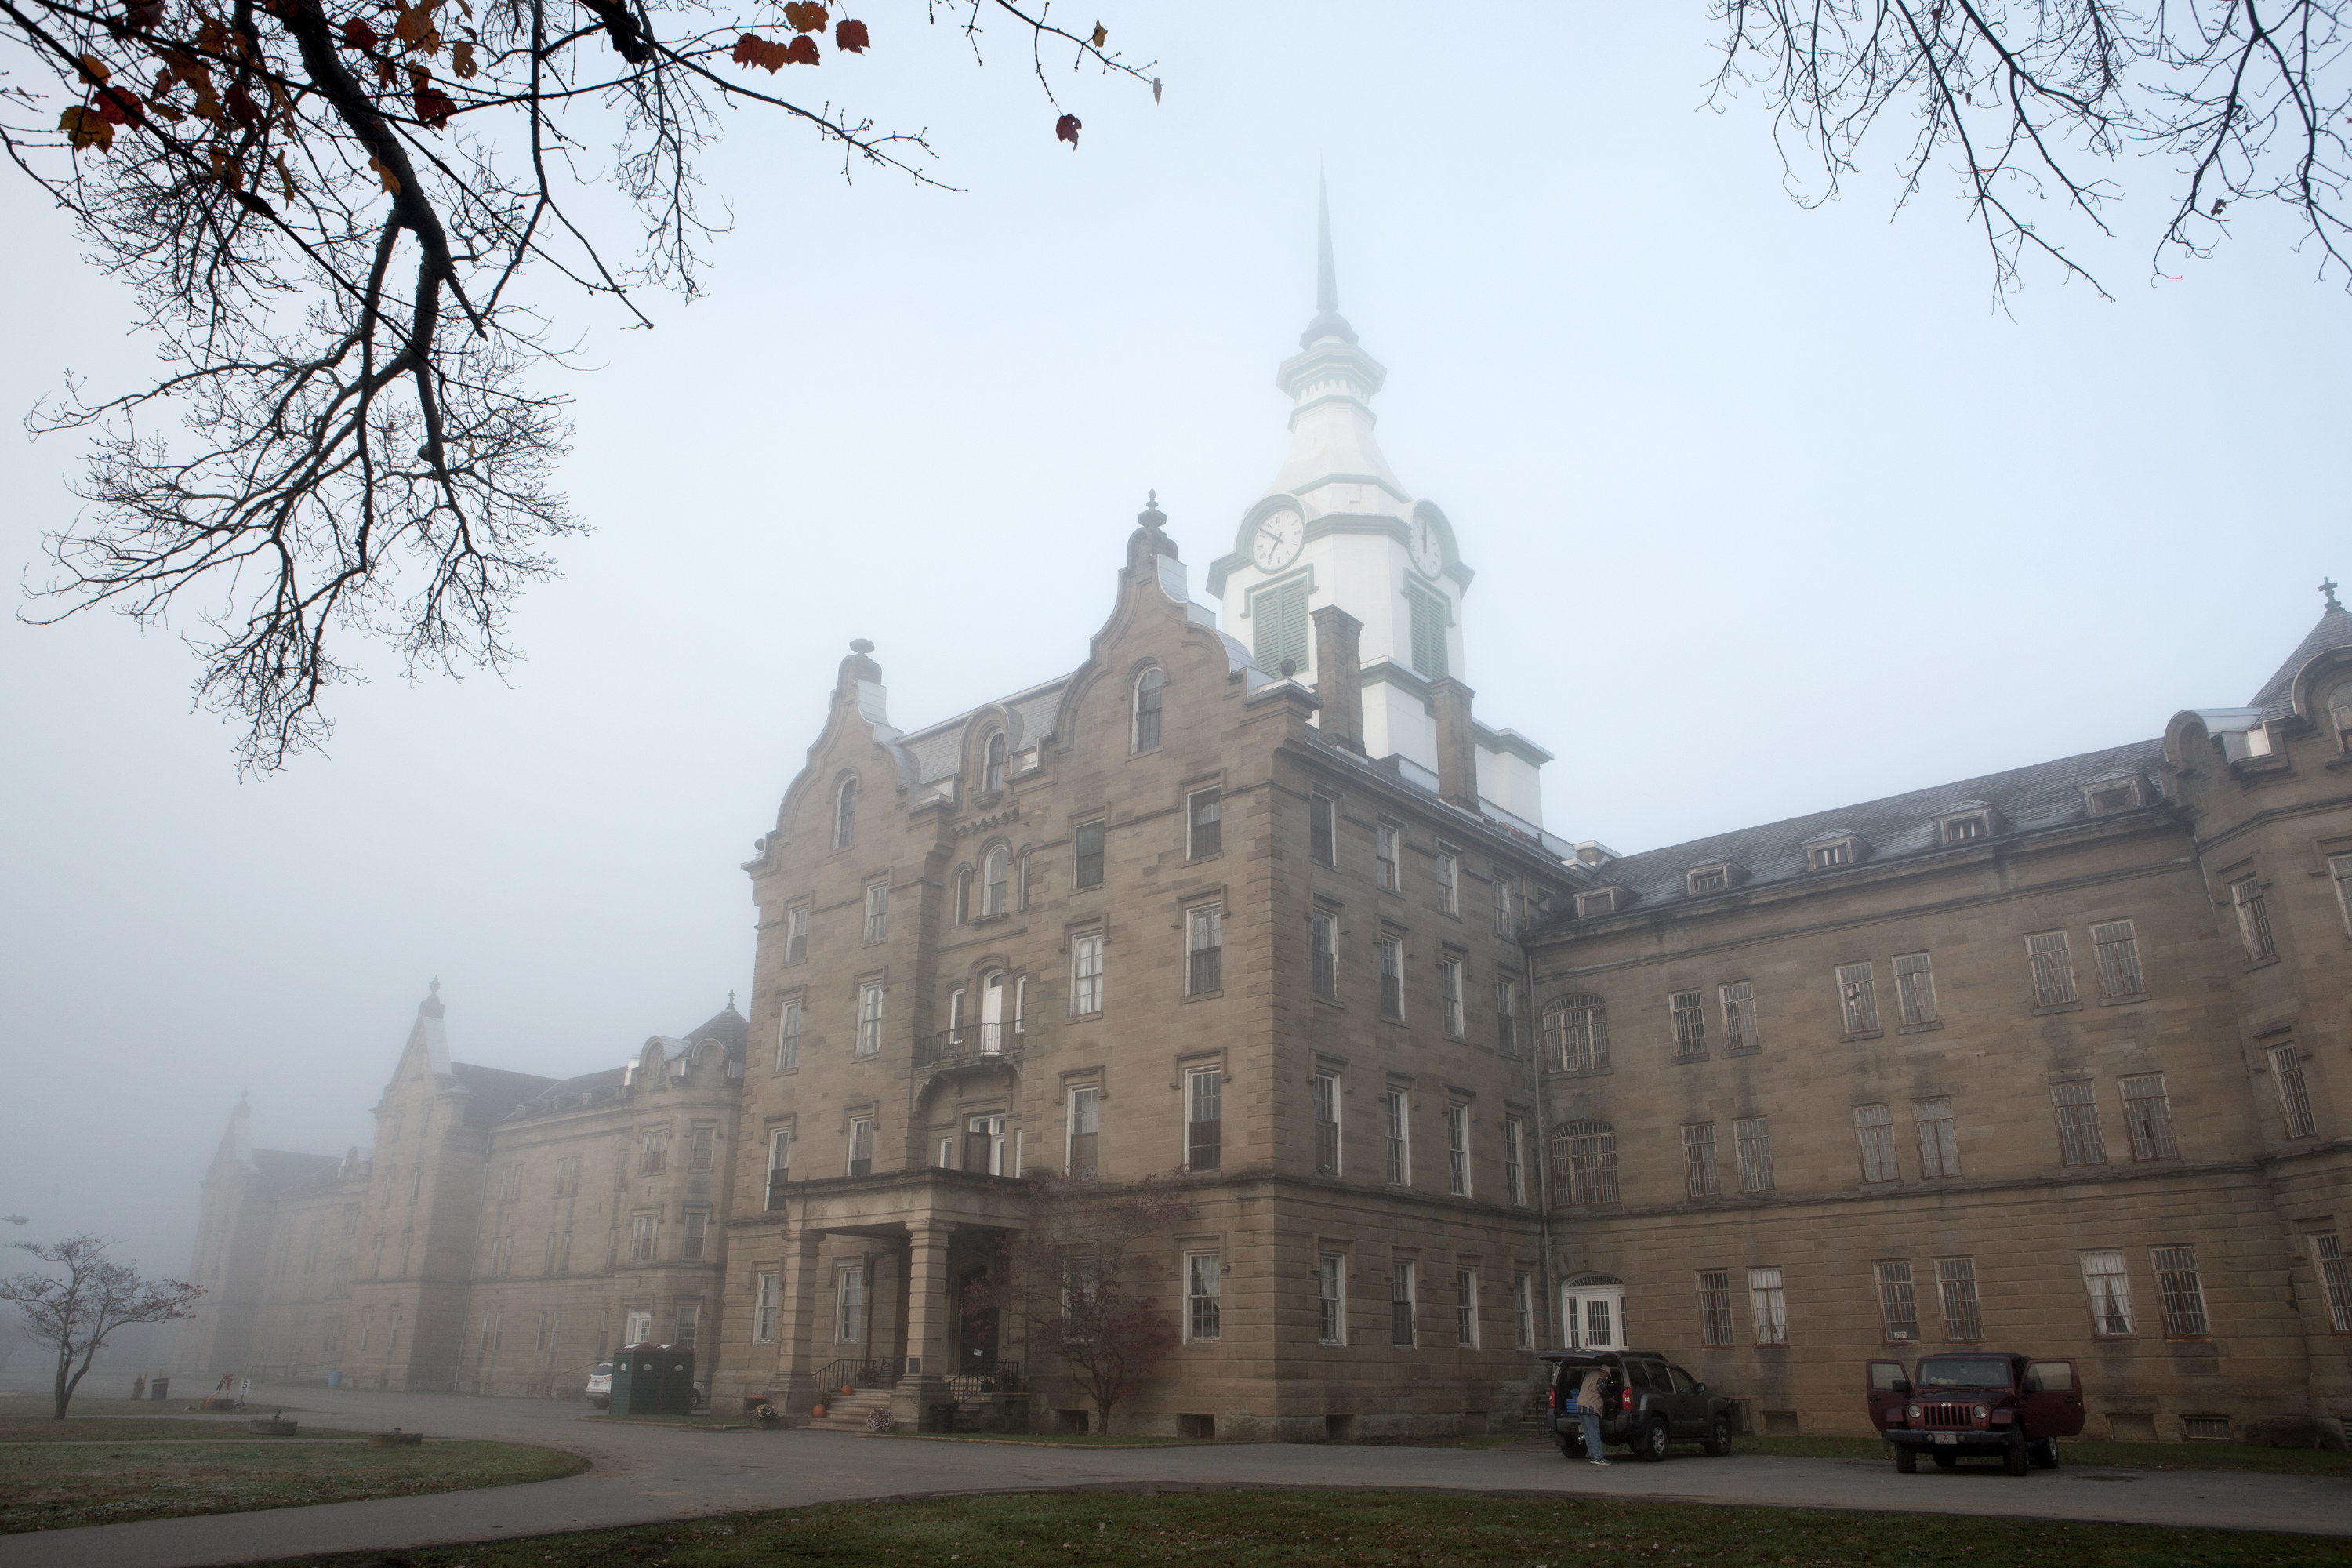 Foggy day at the asylum